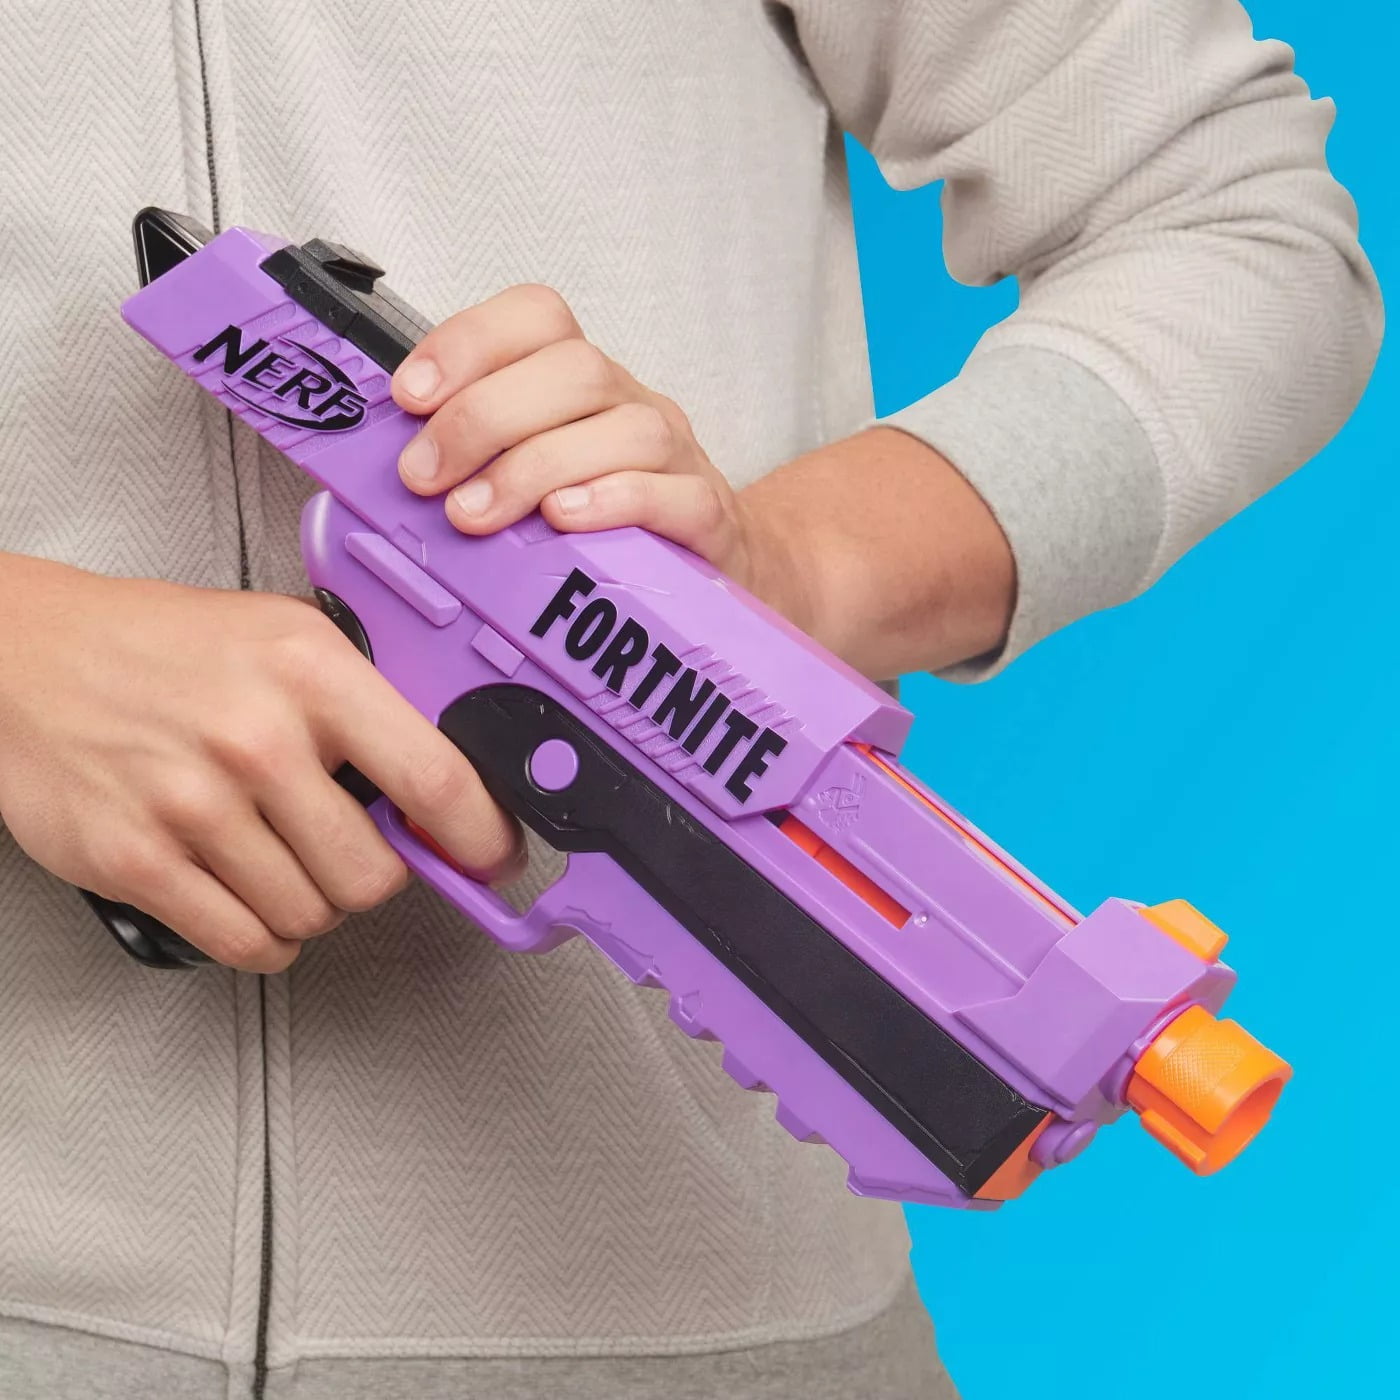 Fortnite-themed DP-E Blaster Nerf gun (Pack of 2)